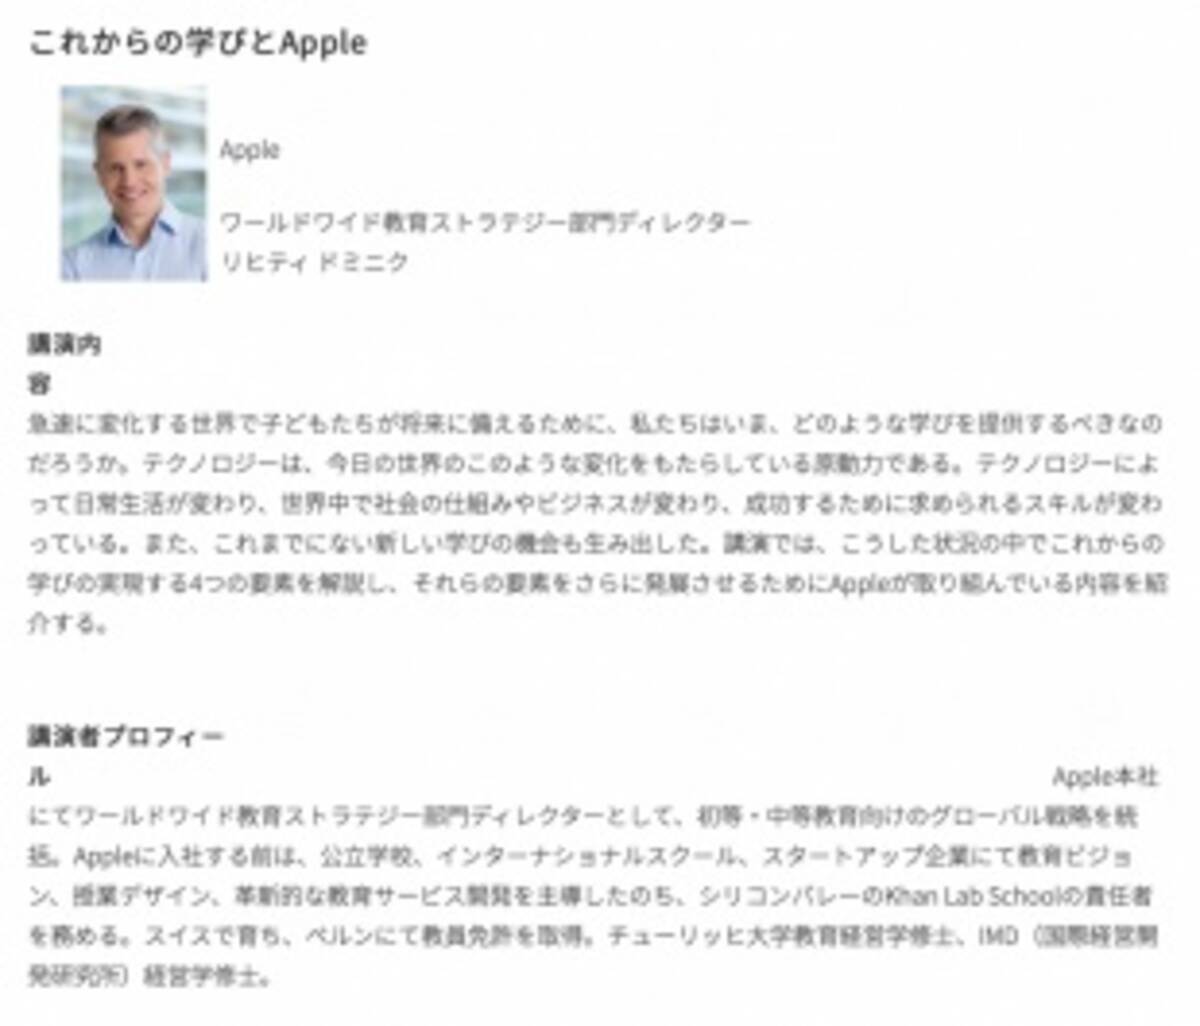 Edix東京22 Appleの教育戦略担当者 学びに繋げるためのデザイン原則を語る Edix東京 22年5月13日 エキサイトニュース